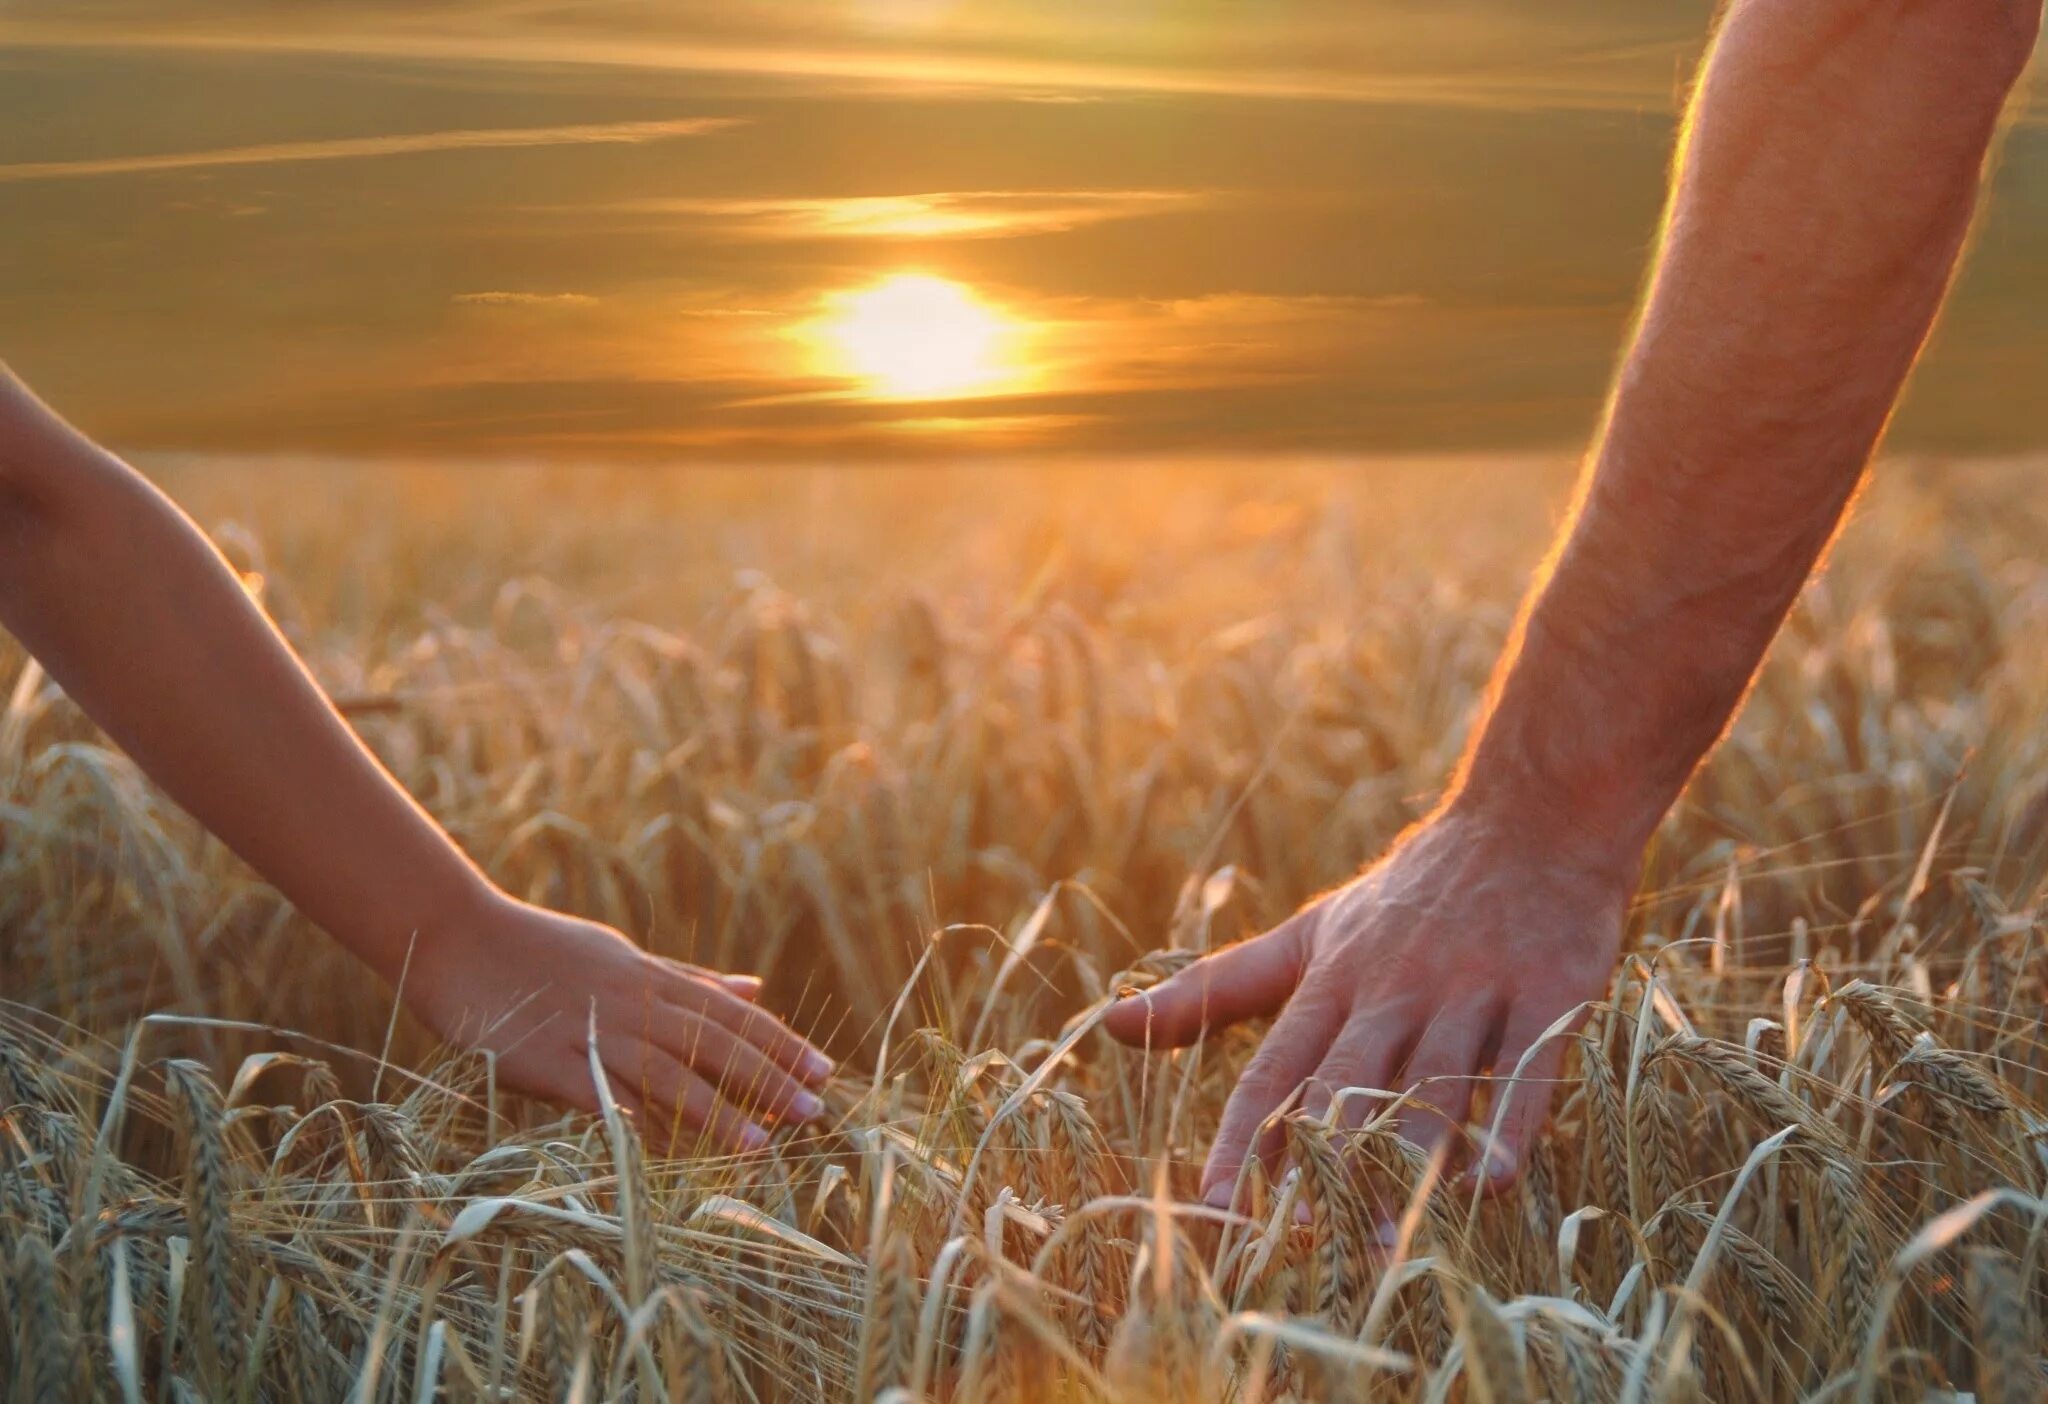 Есть слово золотая. Берегите друг друга. Пшеничное поле человек. Берегите друг друга любите. Любите цените и берегите друг друга.